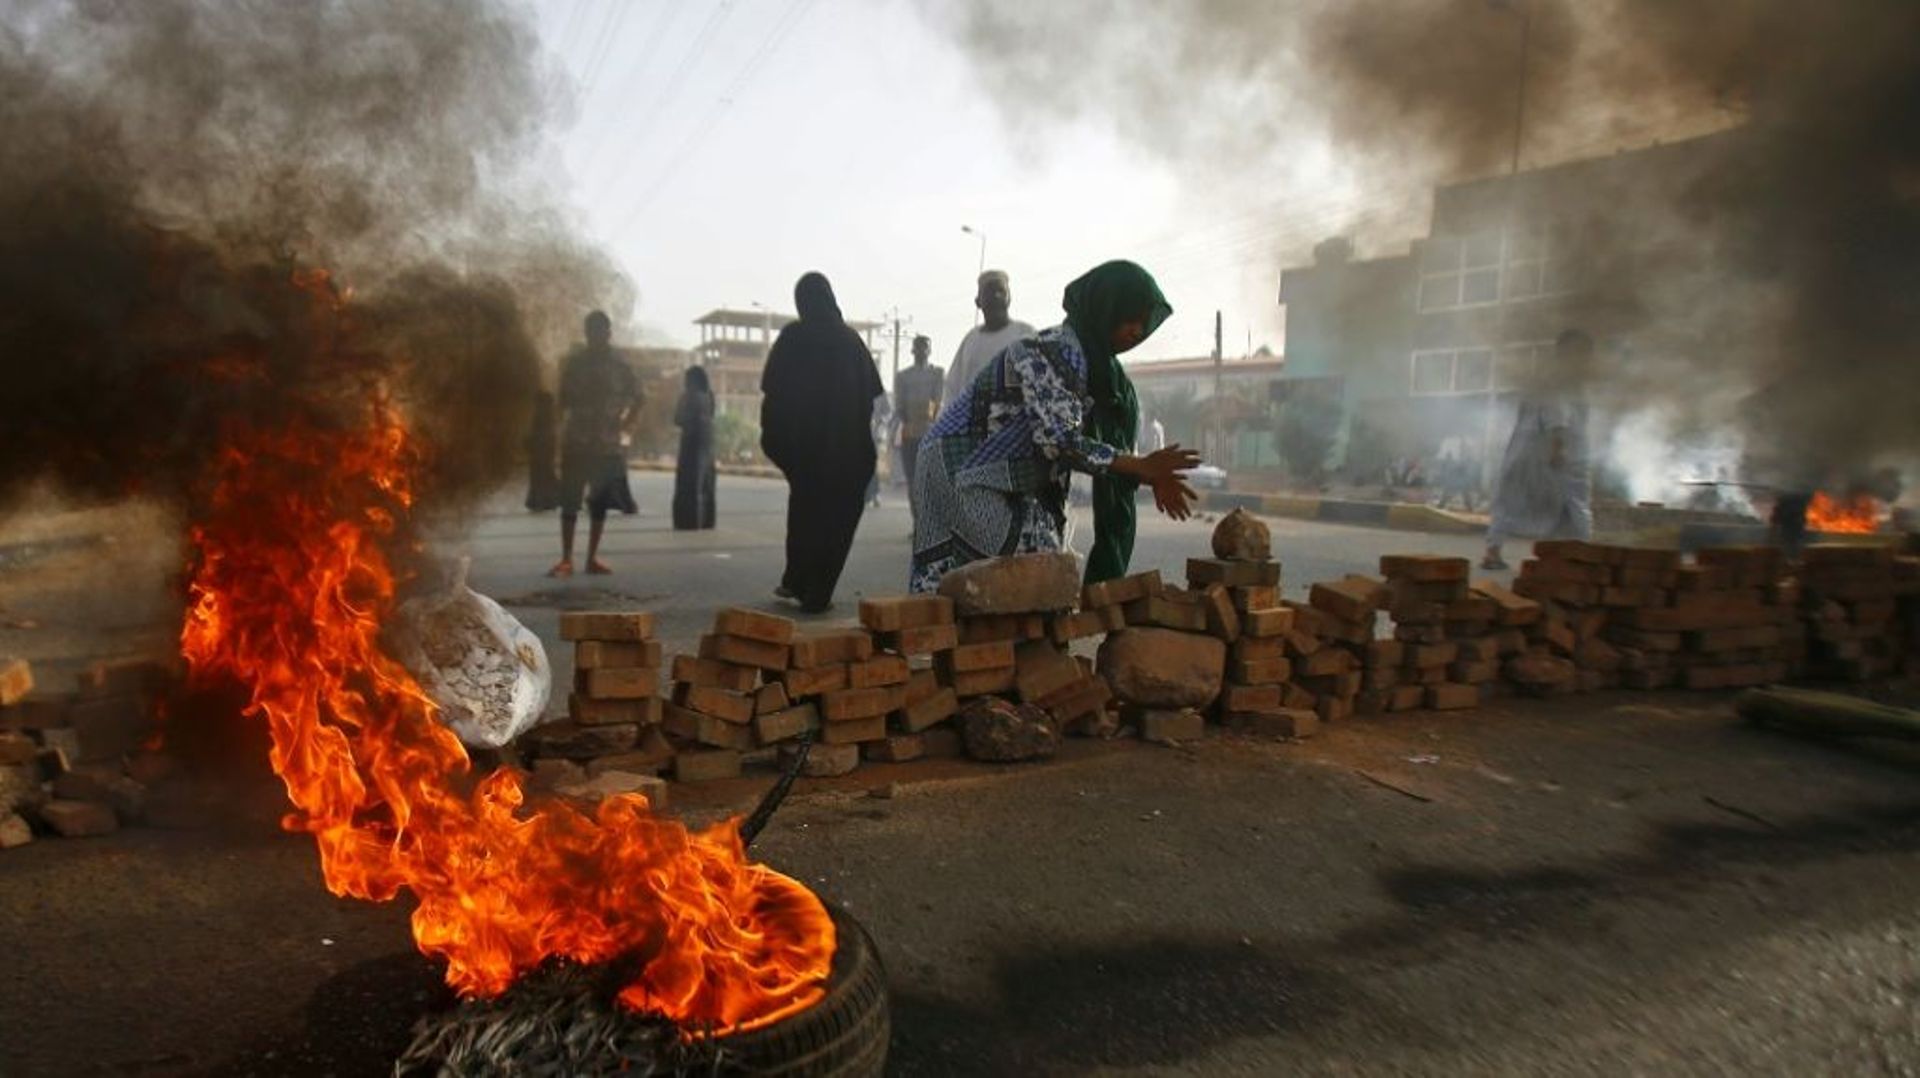 Des manifestants soudanais font brûler des pneus et érigent des barricades, le 3 juin 2019 à Khartoum